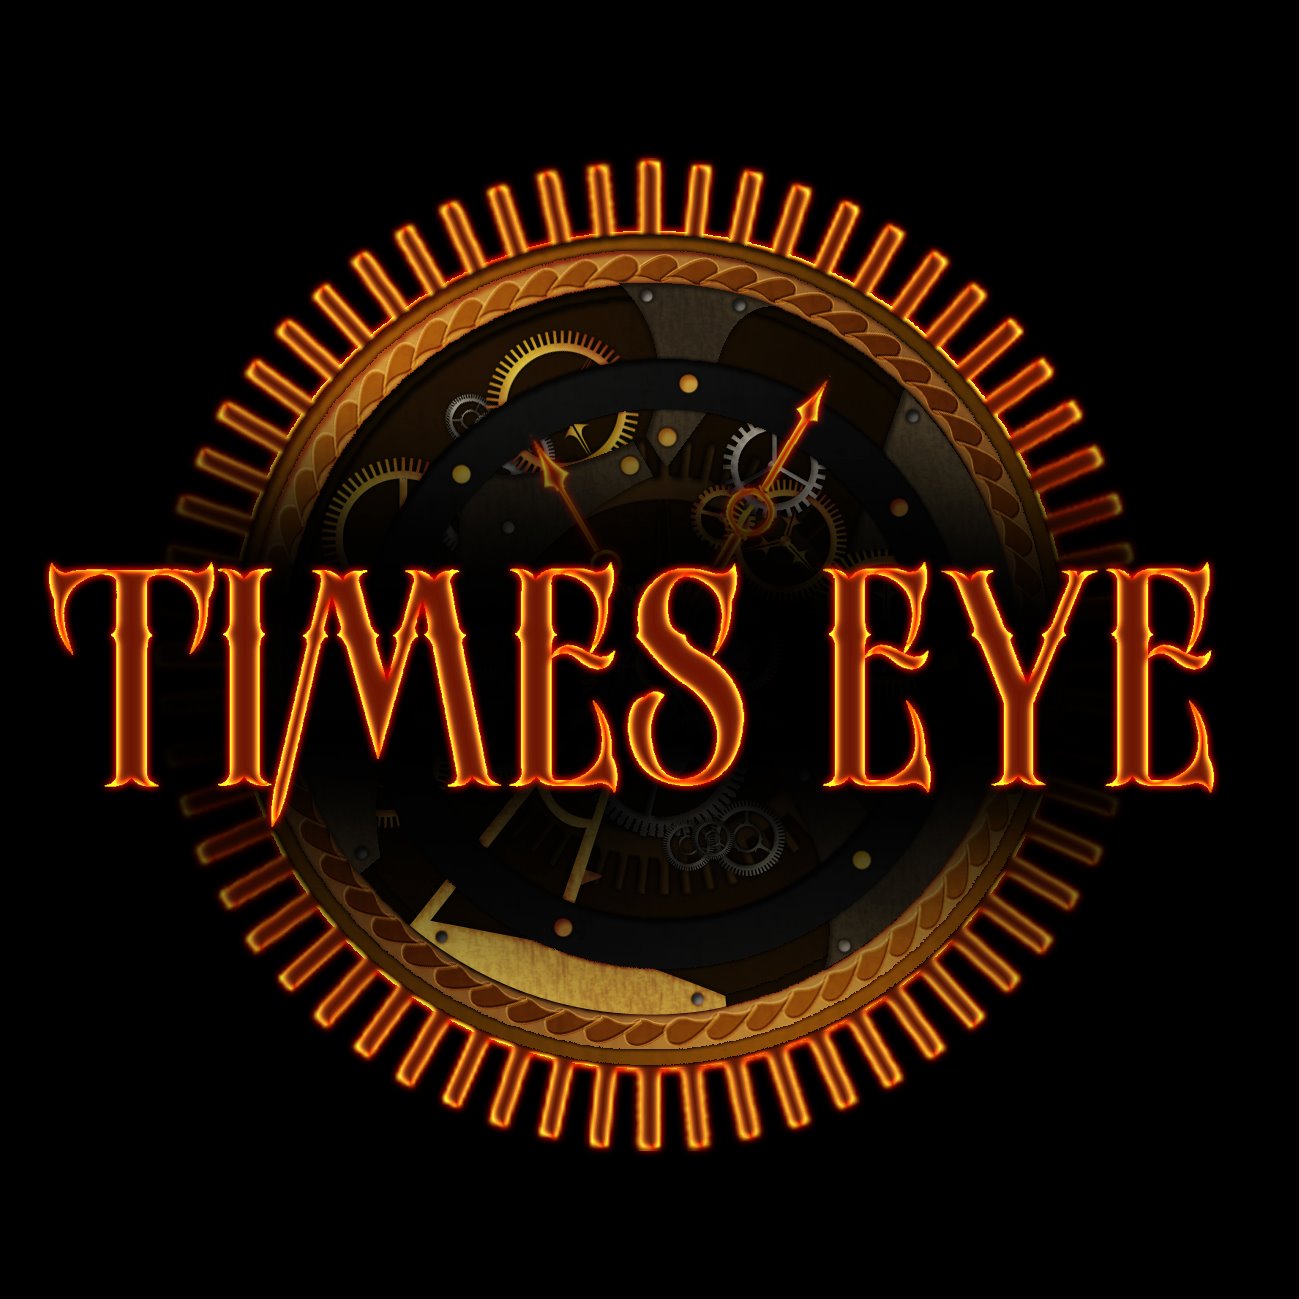 Times Eye